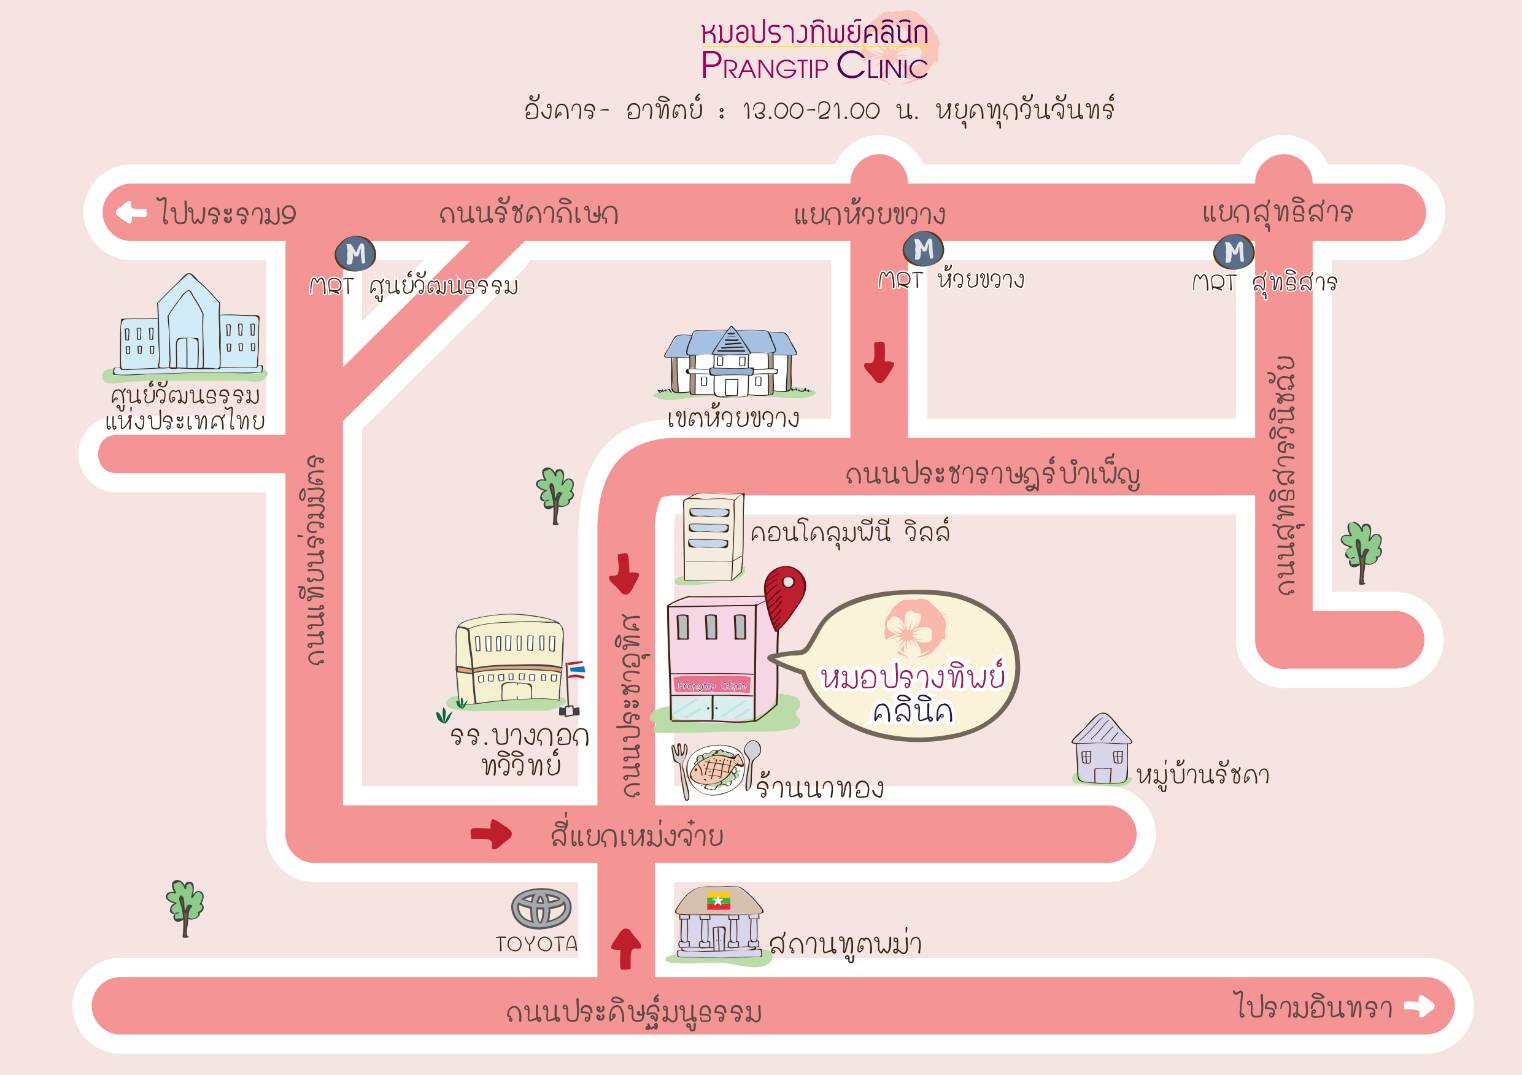 แผนที่ ปรางทิพย์คลินิก Prangtip clinic